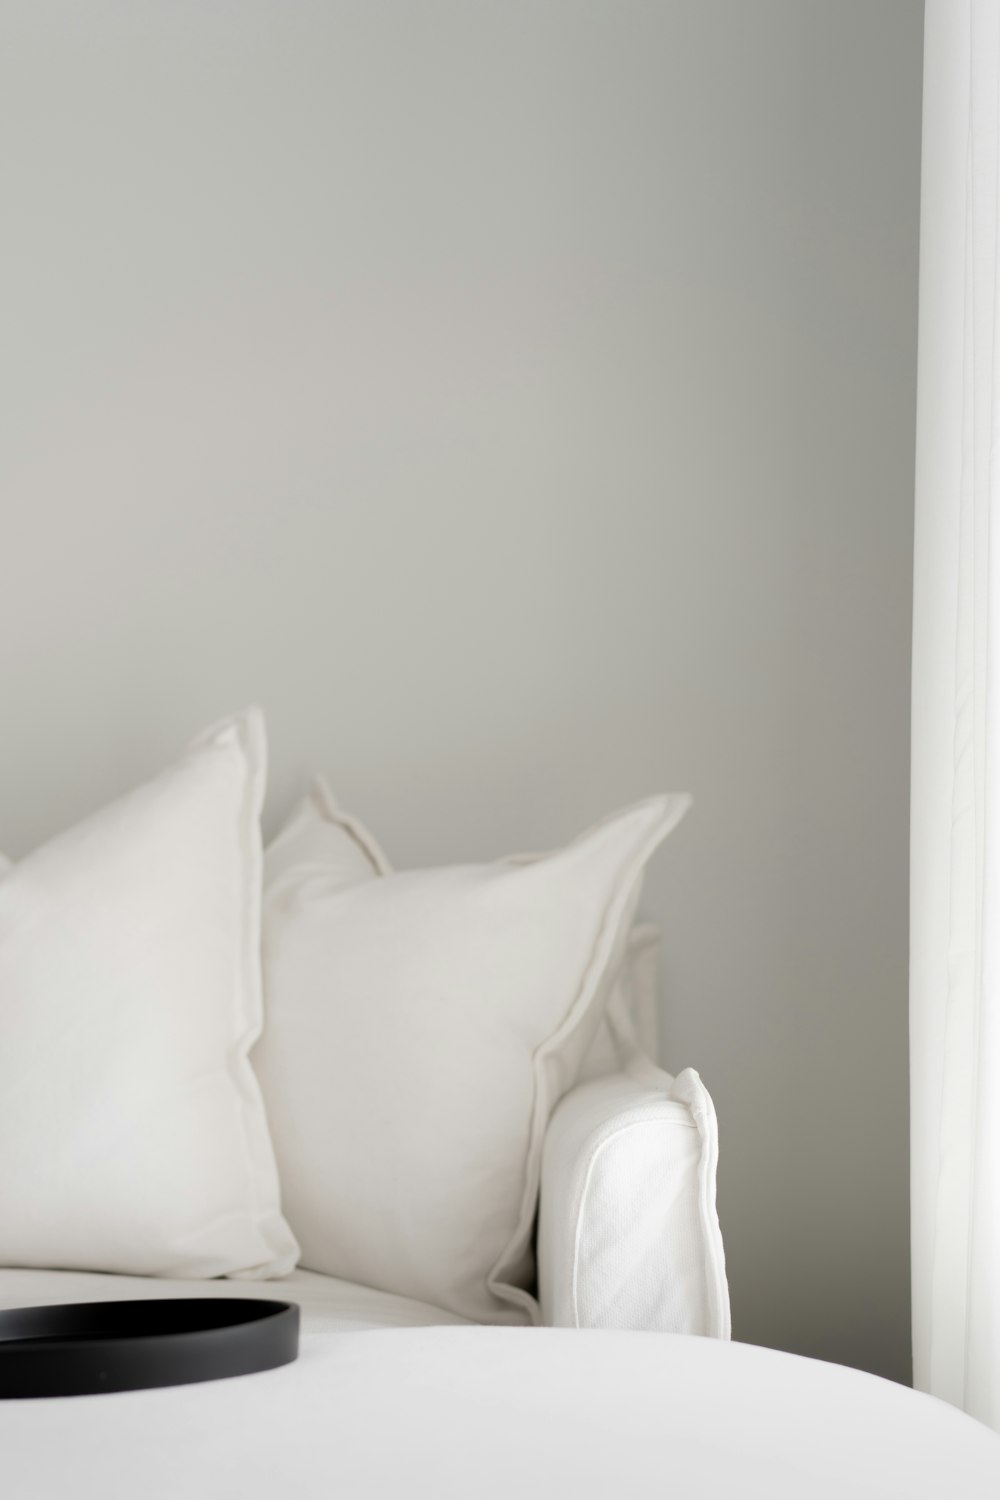 흰색 베개와 검은 색 쟁반이있는 흰색 침대